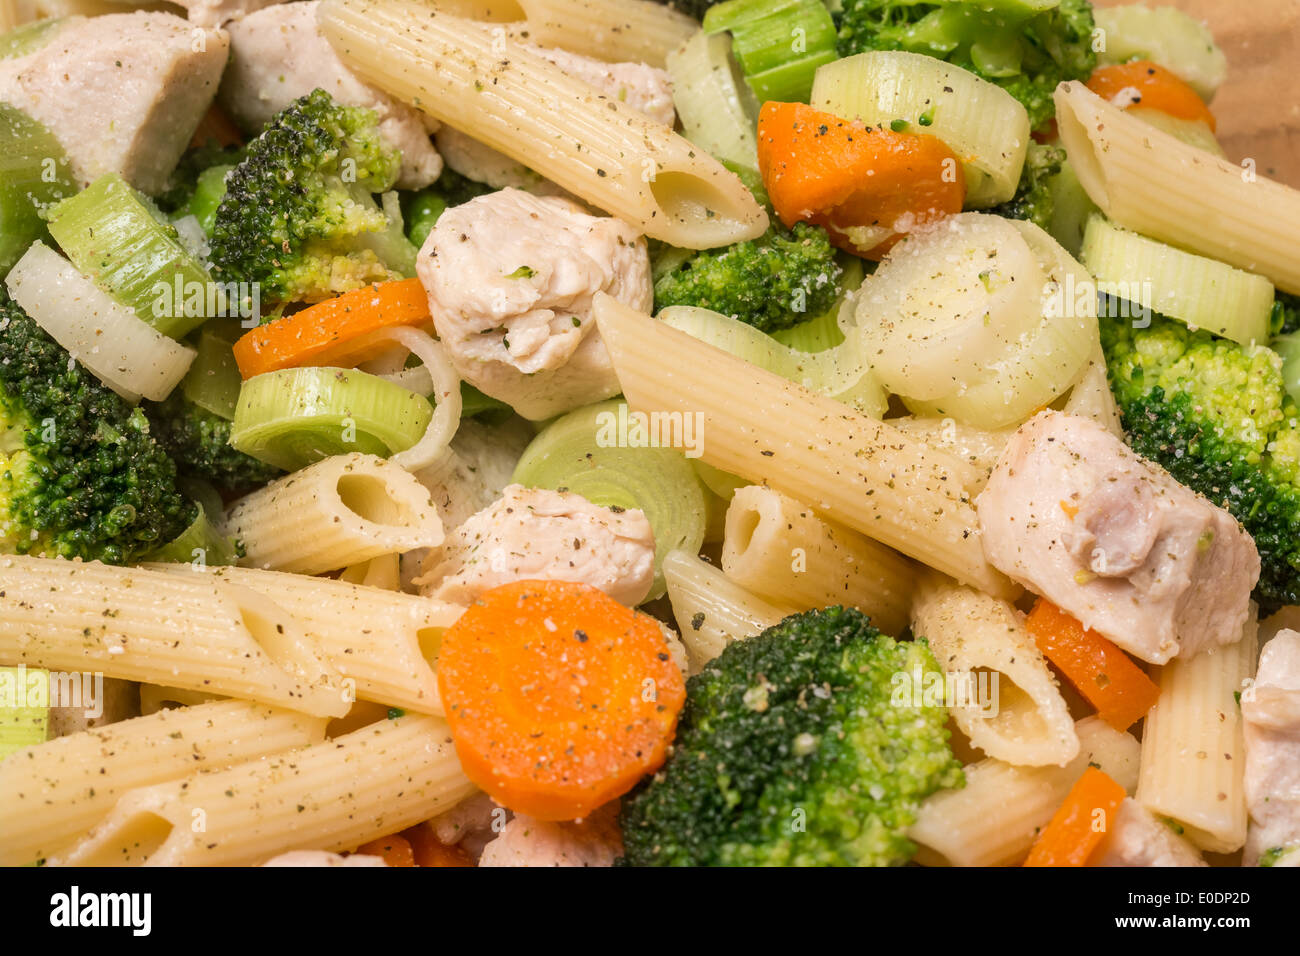 Les pâtes italiennes avec le brocoli, les carottes et la viande de poulet Banque D'Images